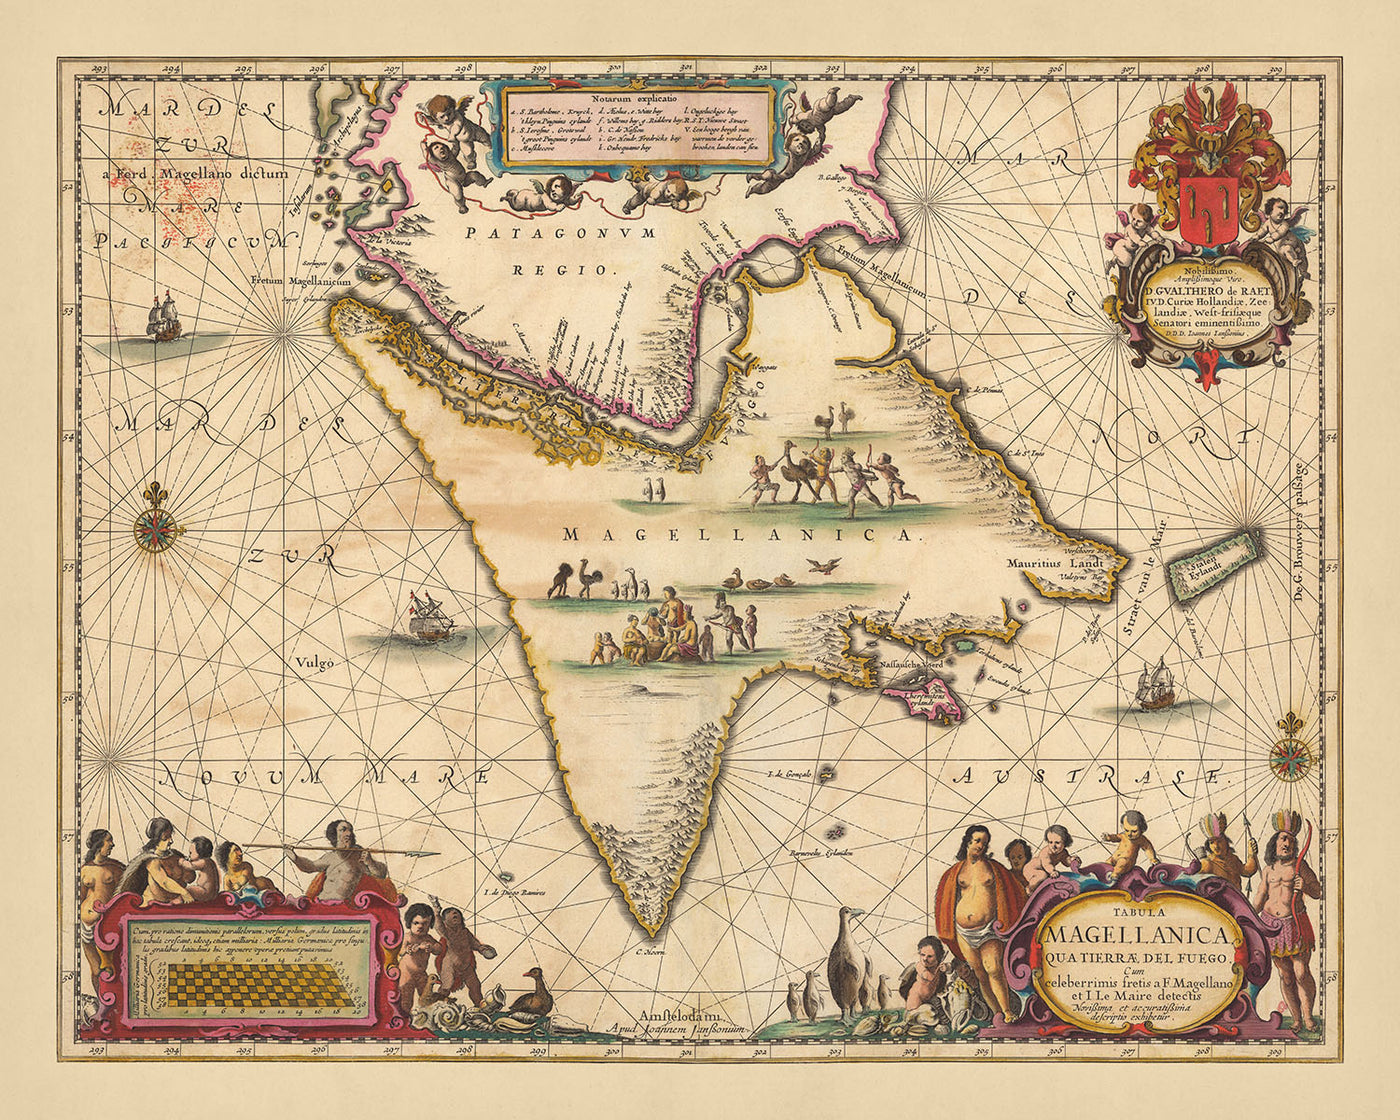 Alte Karte der Magellanstraße von Visscher, 1690: Feuerland, Patagonien, Magallanes und die chilenische Antarktis, Rio Gallegos, Insel Riesco